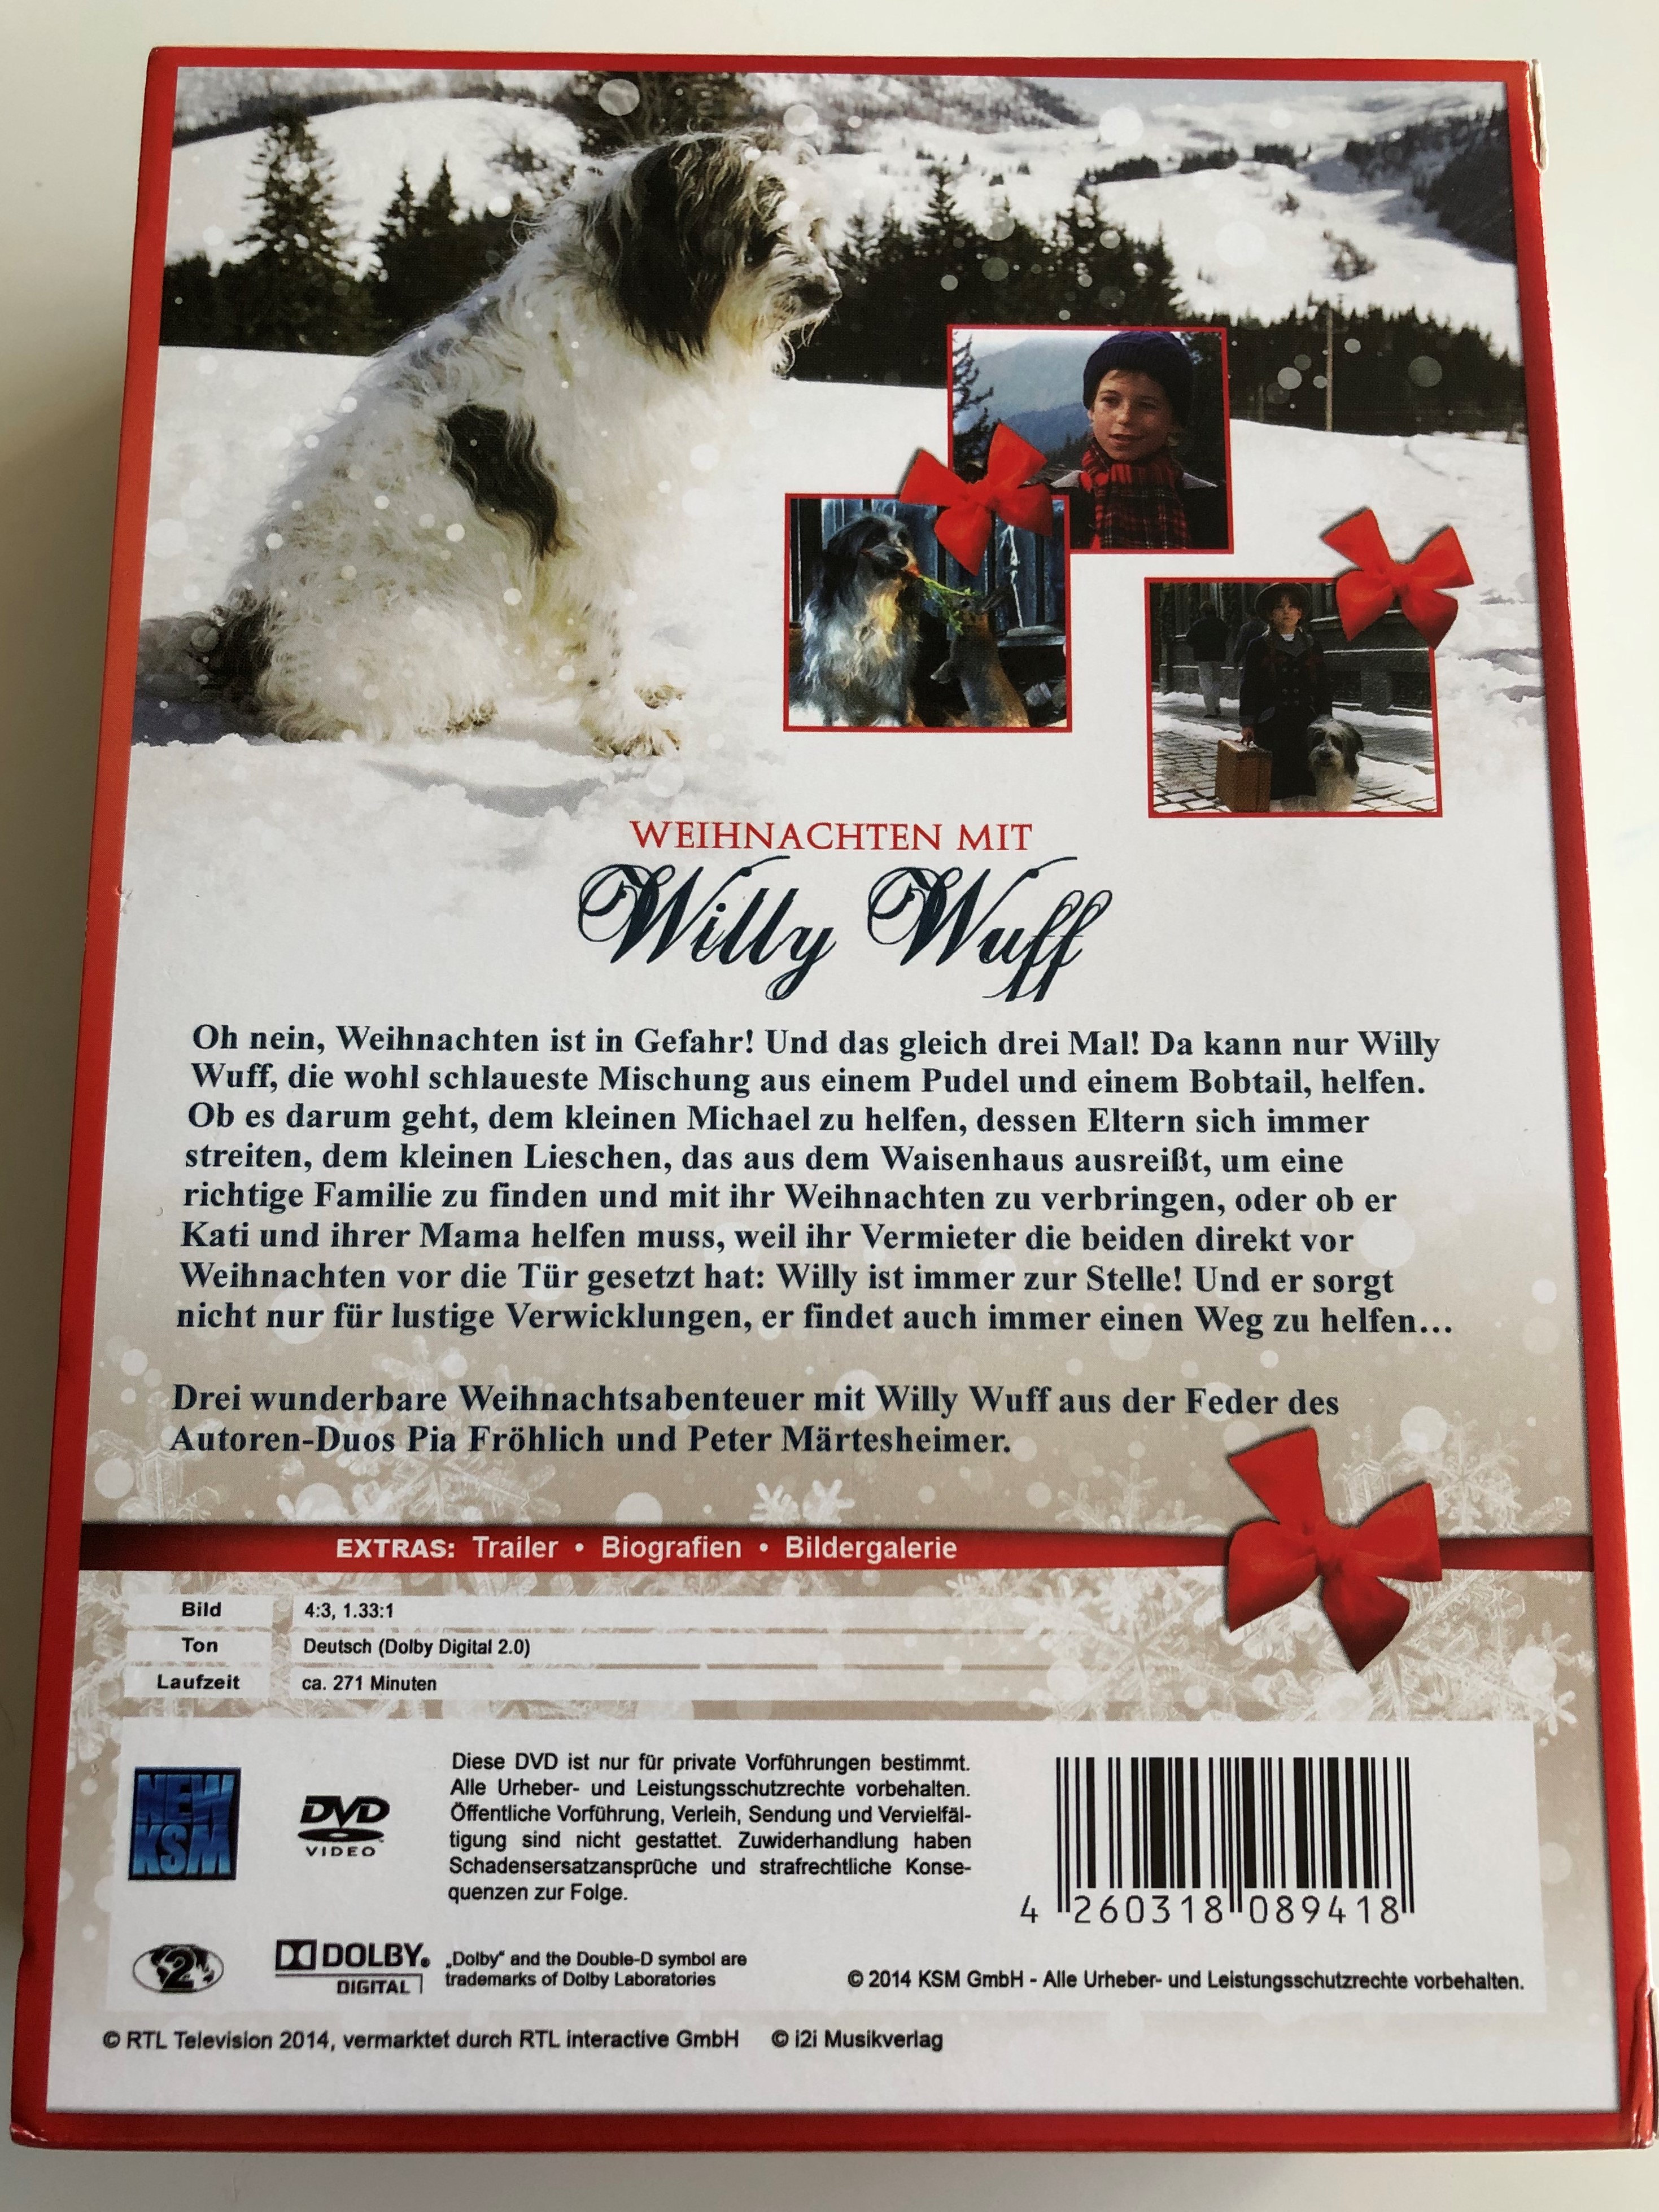 weihnachten-mit-willy-wuff-dvd-box-2014-christmas-with-willy-wuff-3.jpg